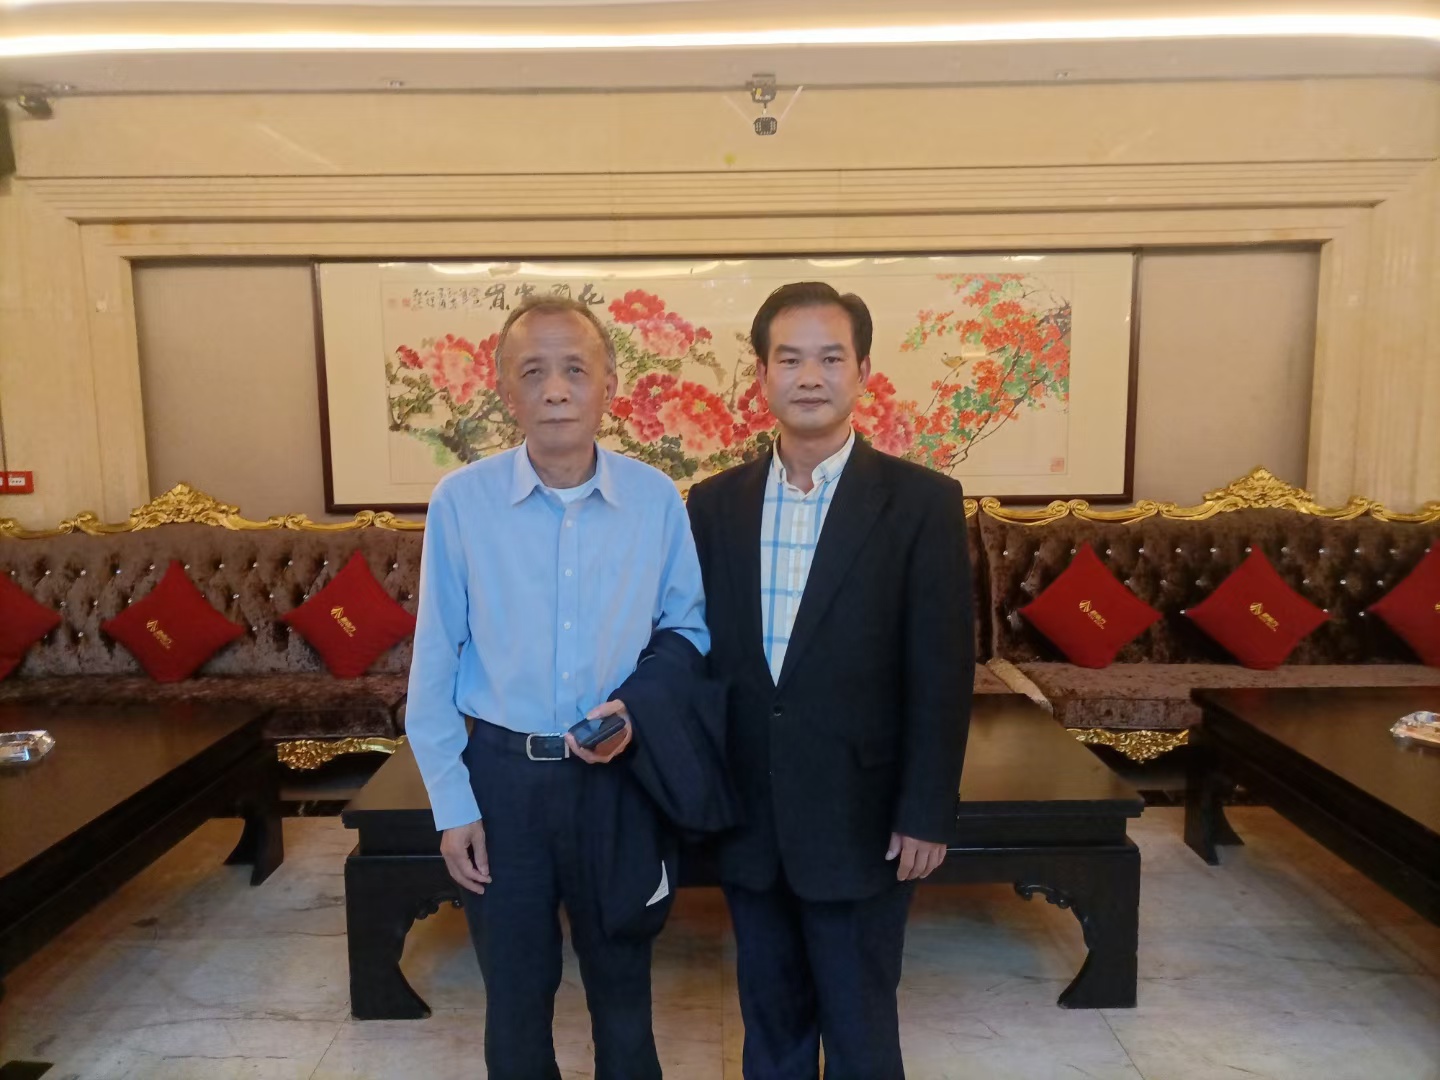 4月20日、暖阳微风、莺飞草长、和“以大众健康为已任、不懈努力”的广东新南方集团有限公司董事长朱拉伊先生在一起。